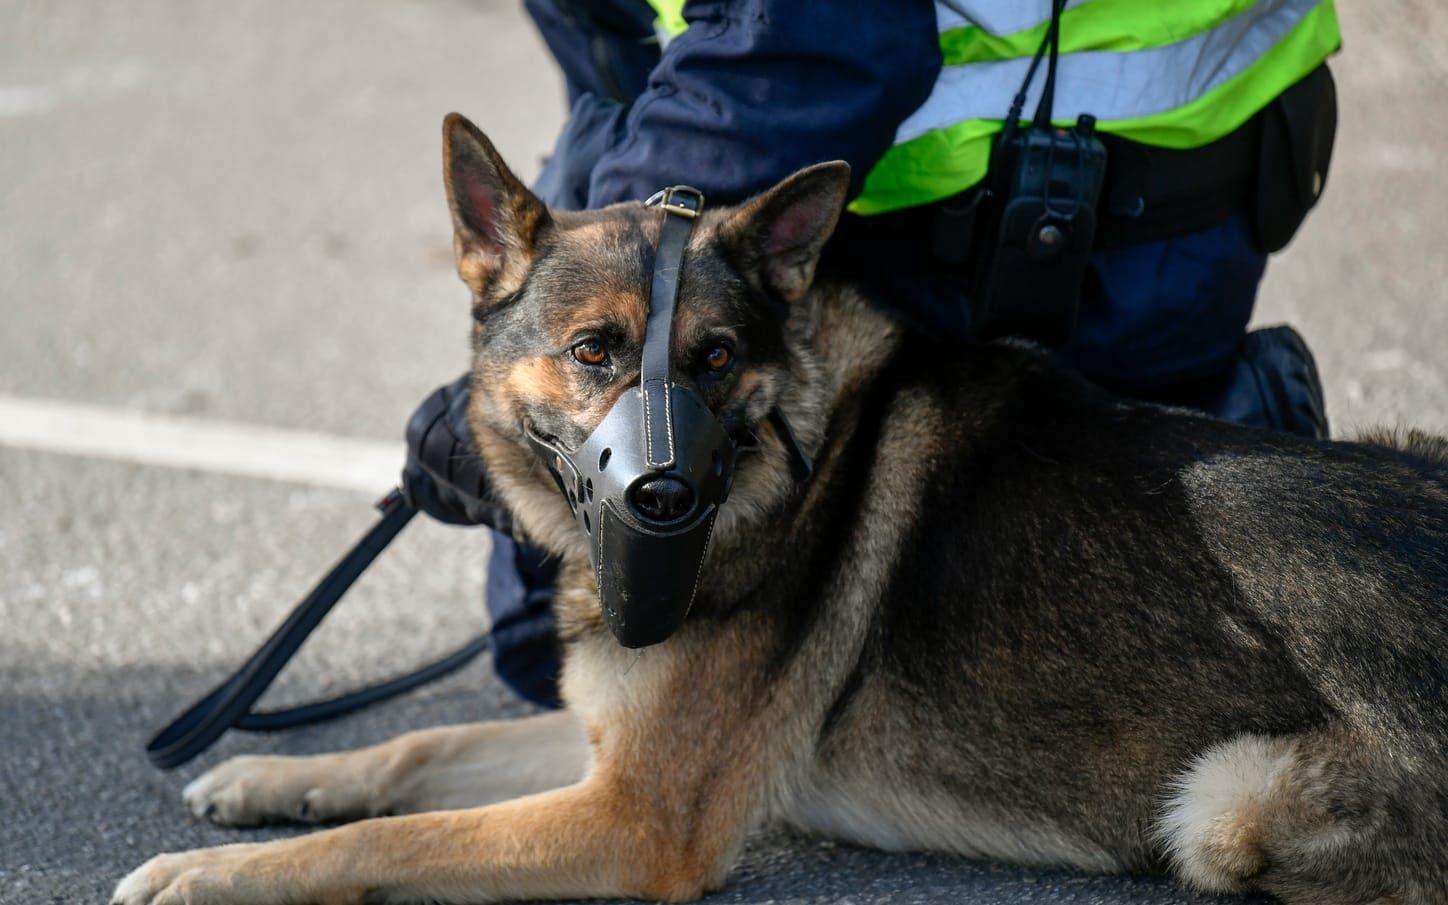 "De är våra bästa medarbetare", säger Christer Fuxborg vid polisen om djurens insats. Foto: TT